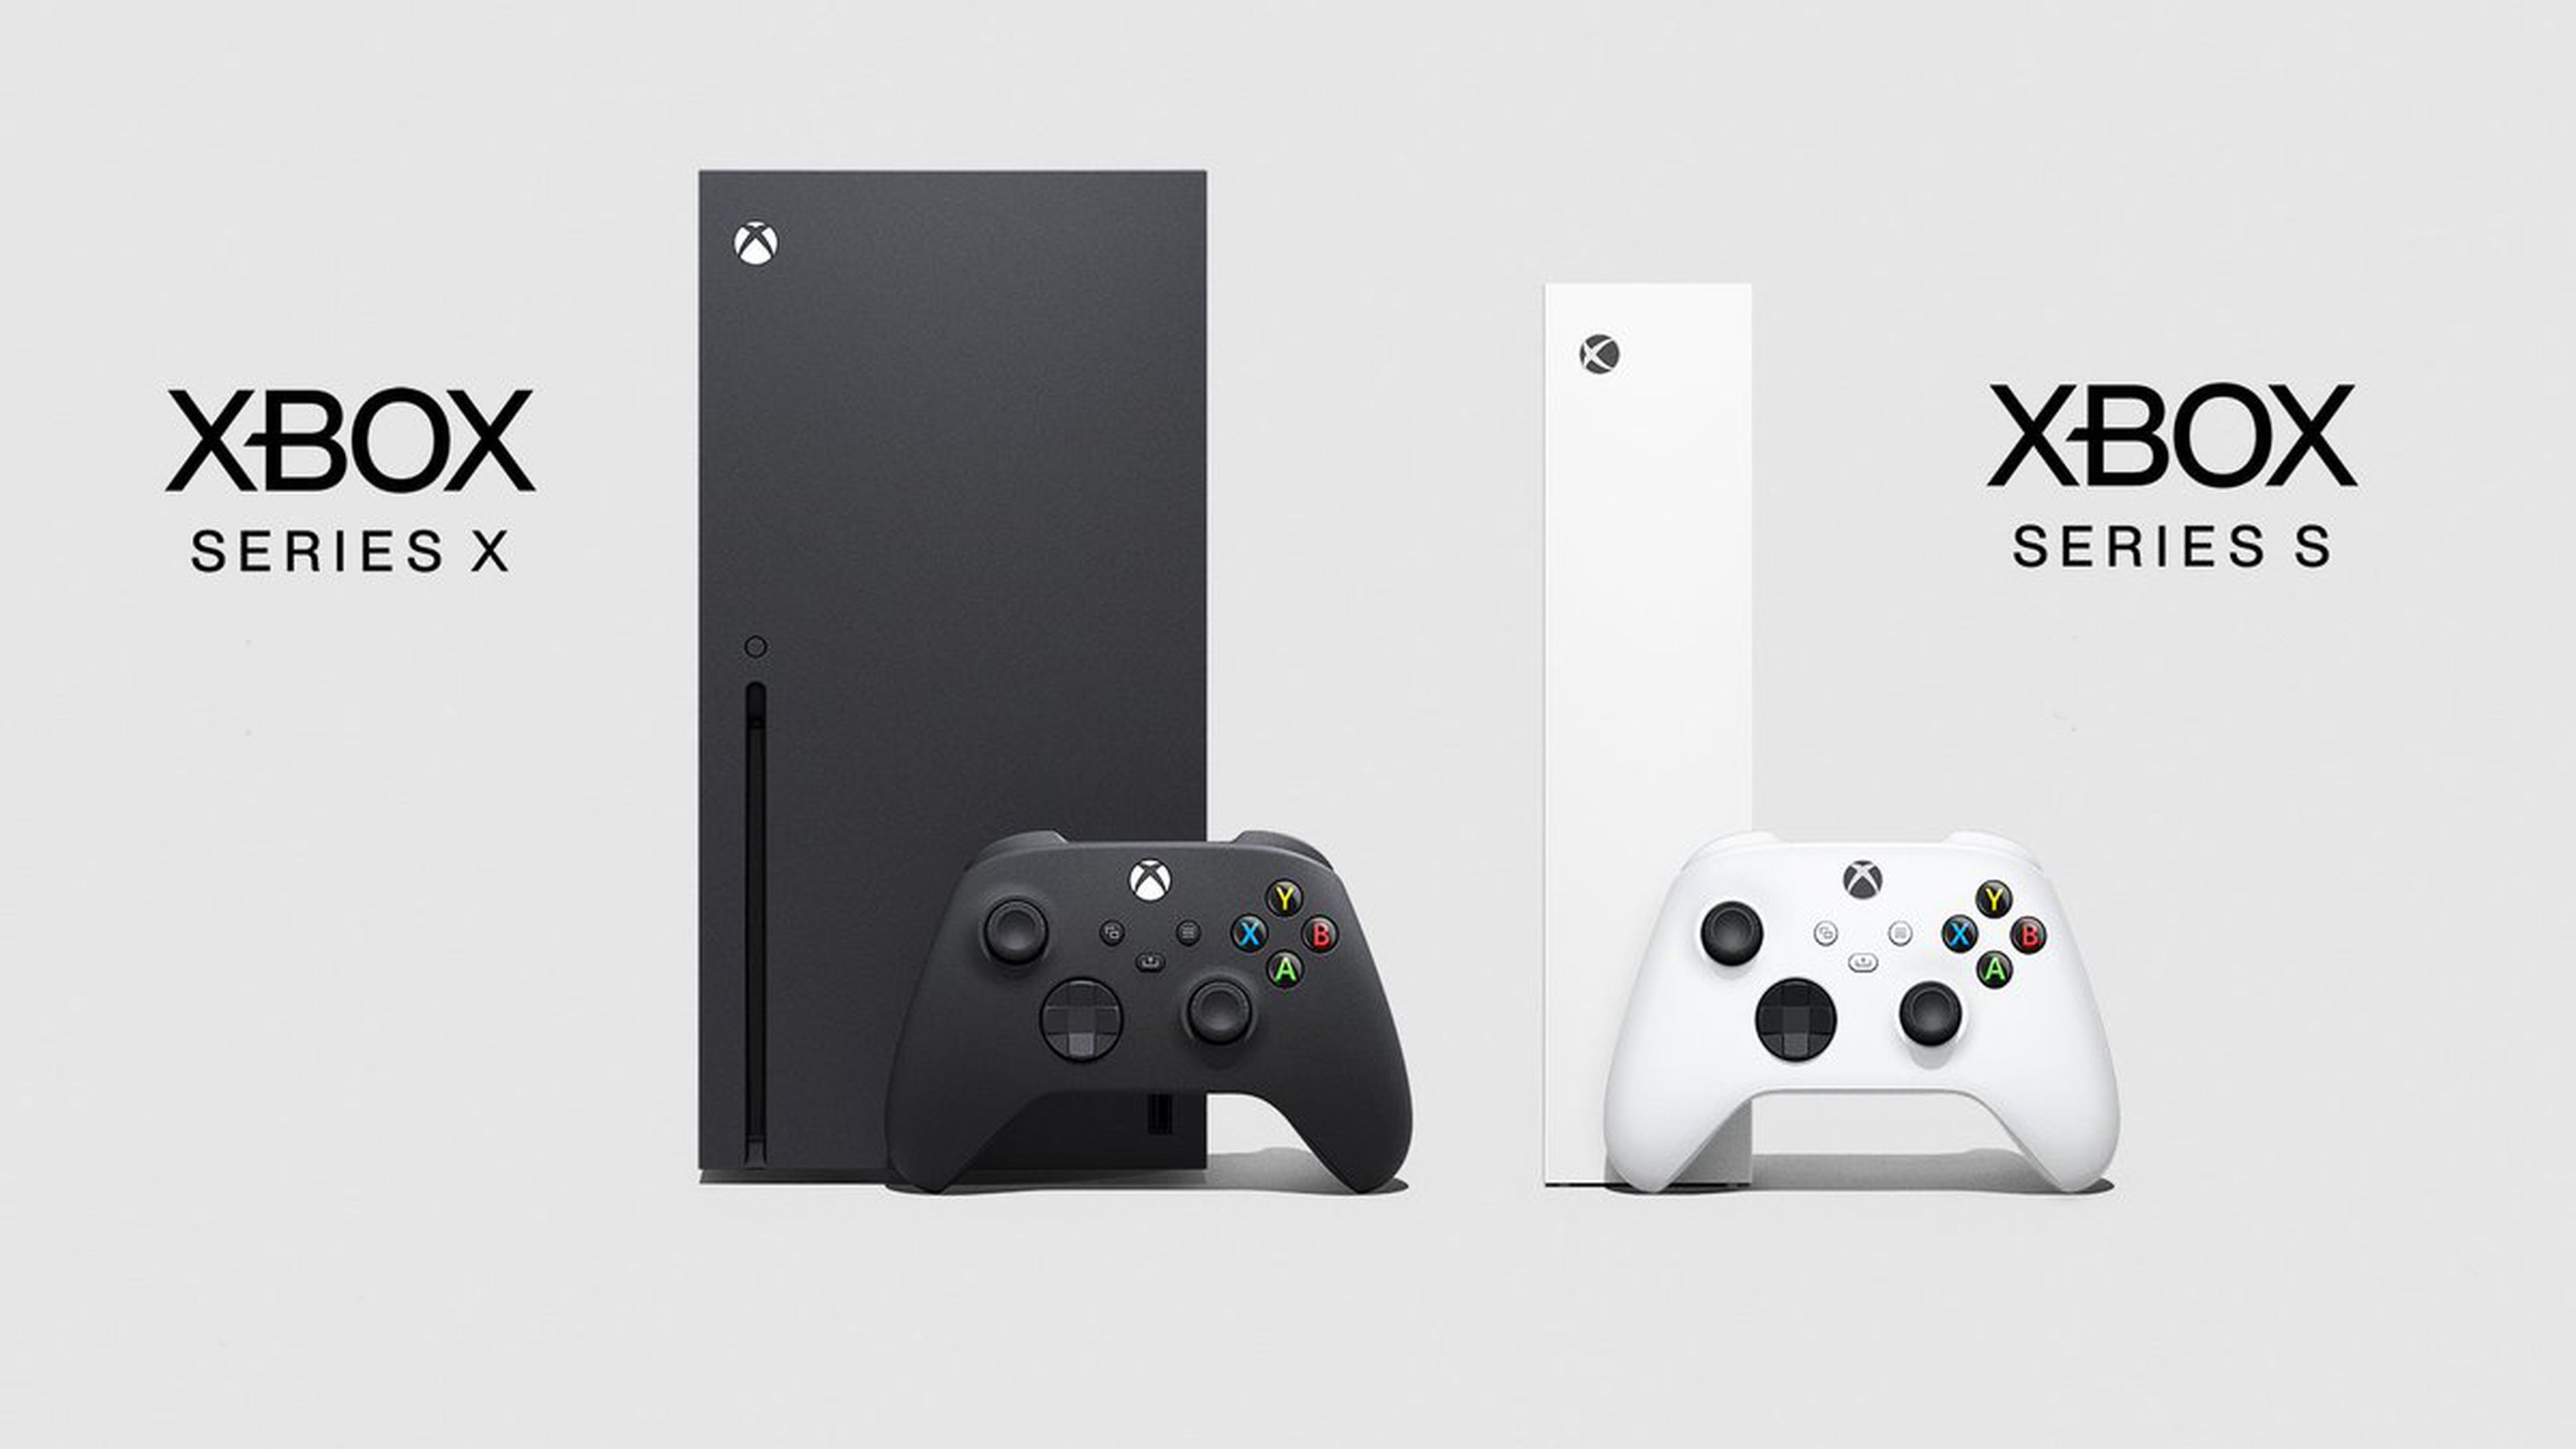 Phil Spencer reconoce que desarrollar juegos para Xbox Series X y